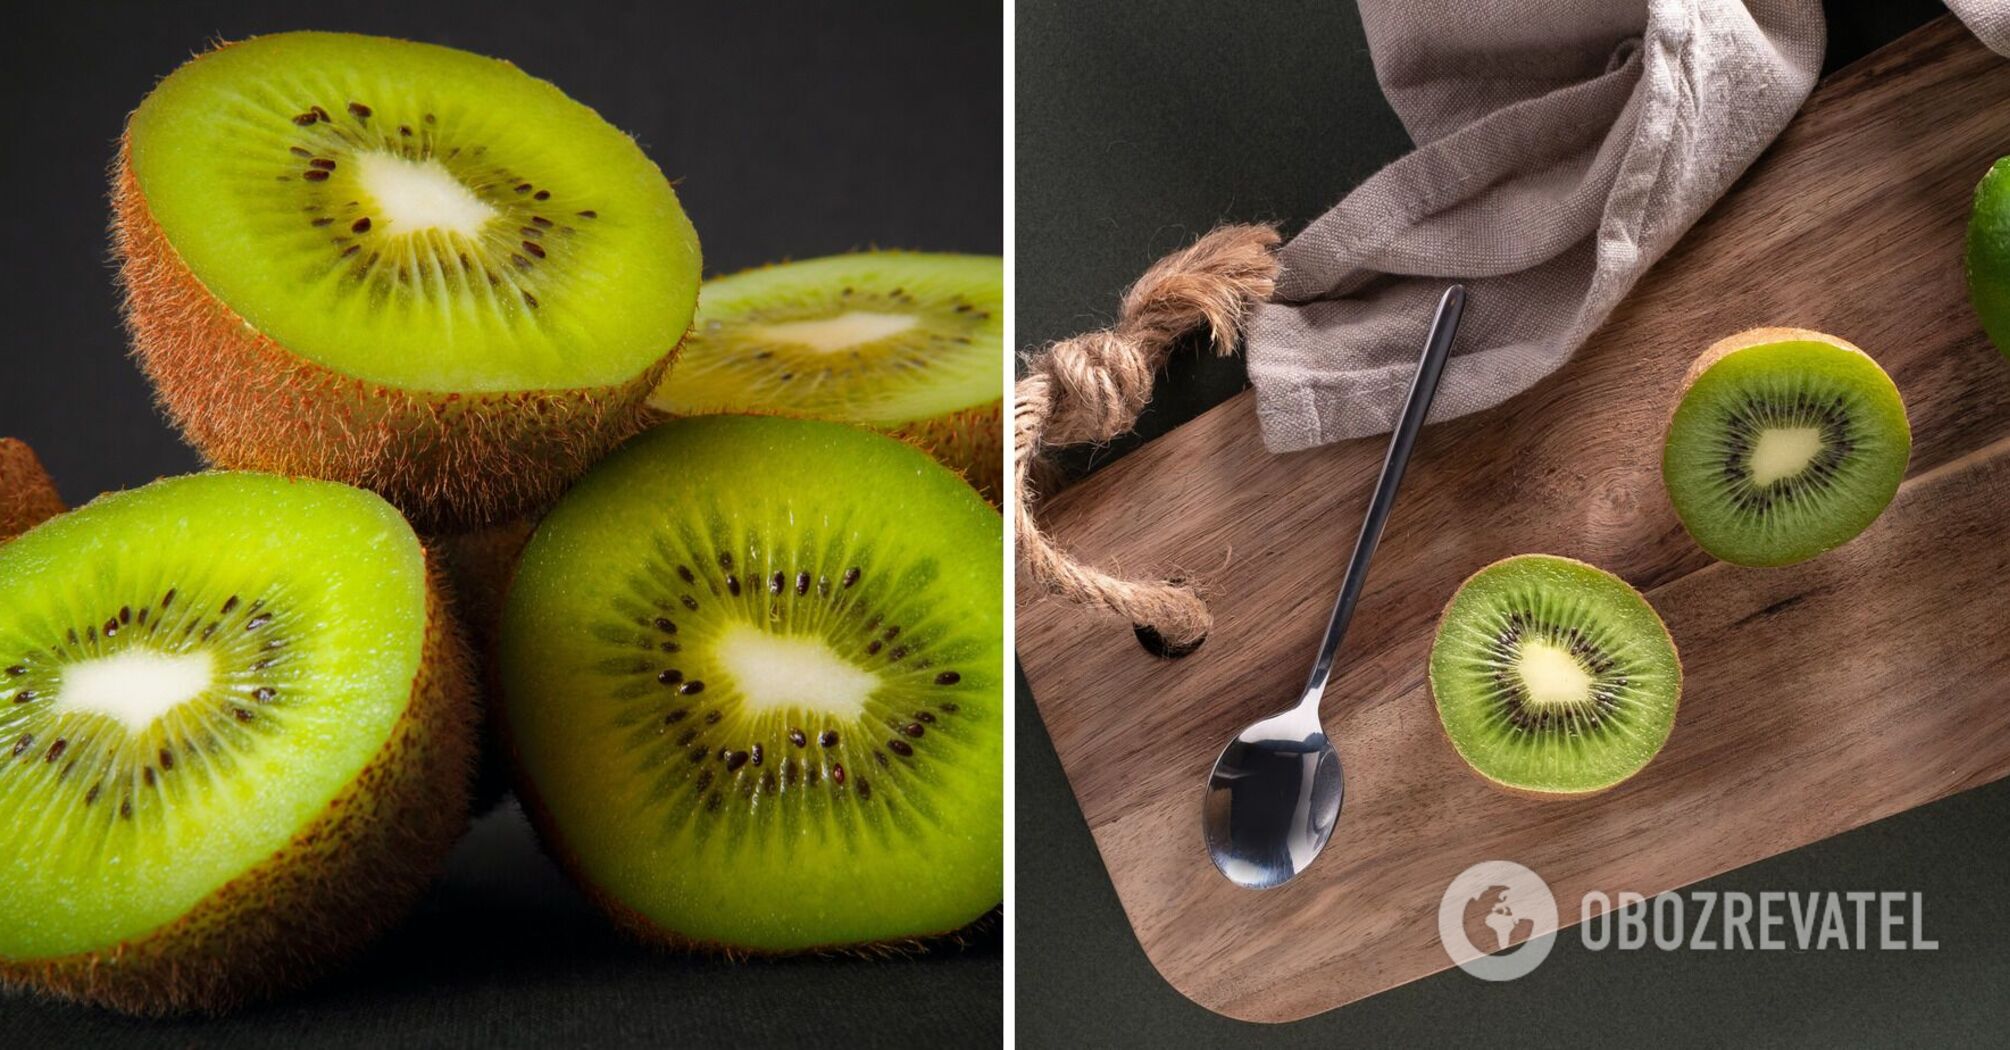 Benefits of kiwi